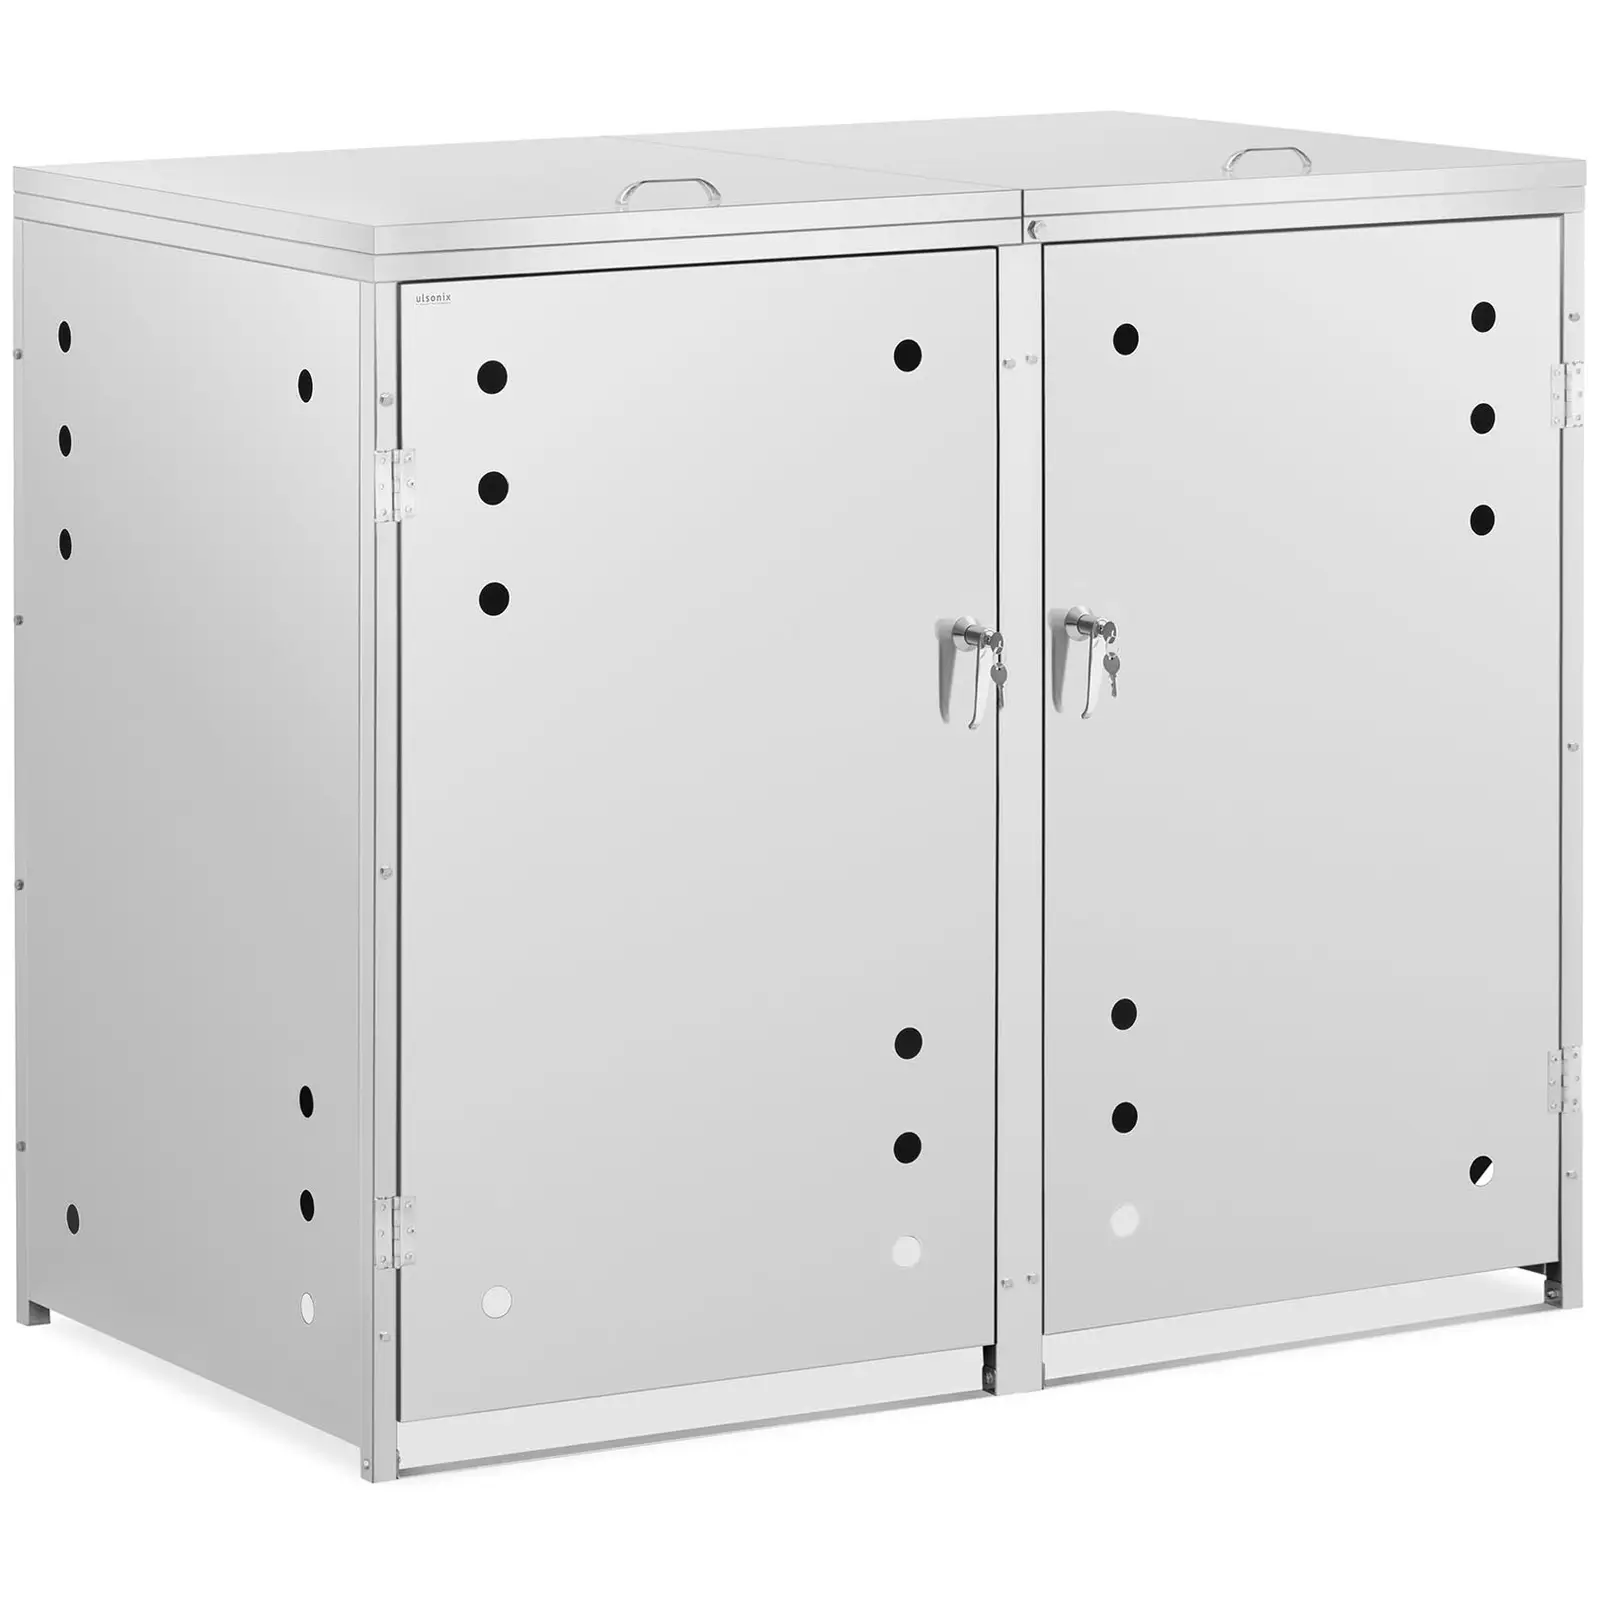 Bin Storage Box - 2 x 240 L - air holes